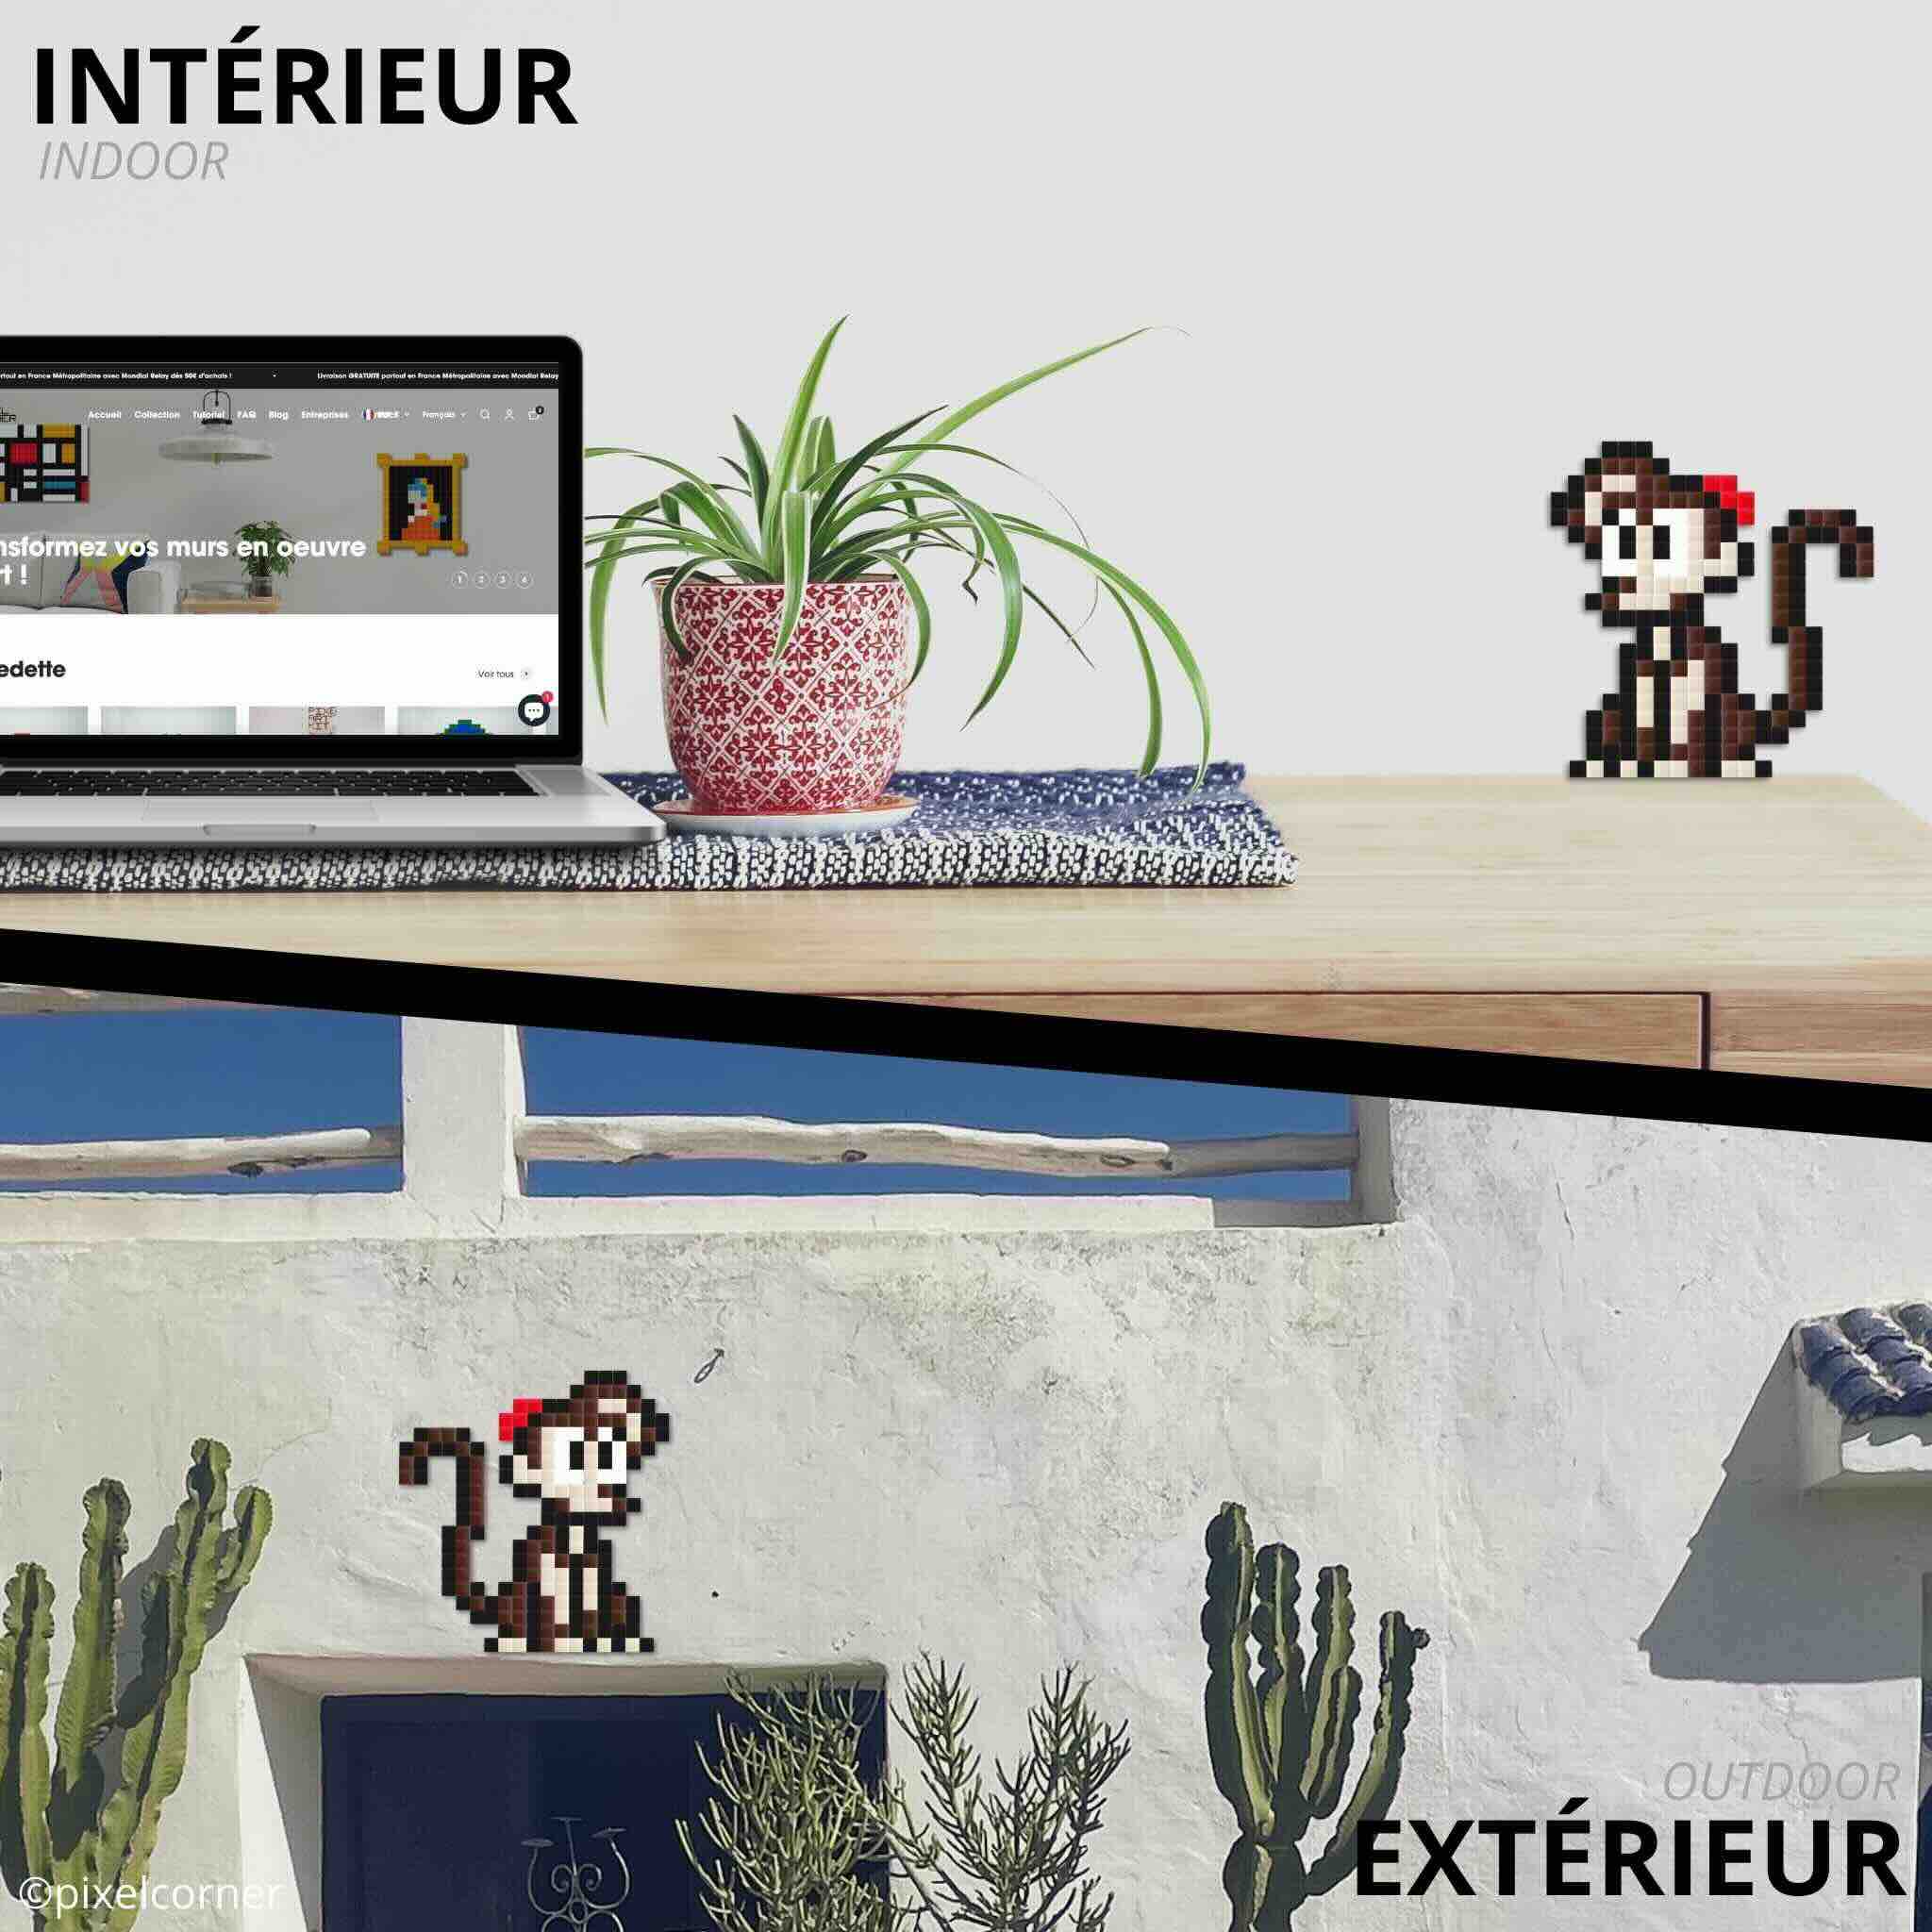 le singe abu de aladdin disney en mosaïque diy pixelart accroché sur un mur en intérieur et en extérieur avec des plantes et cactus